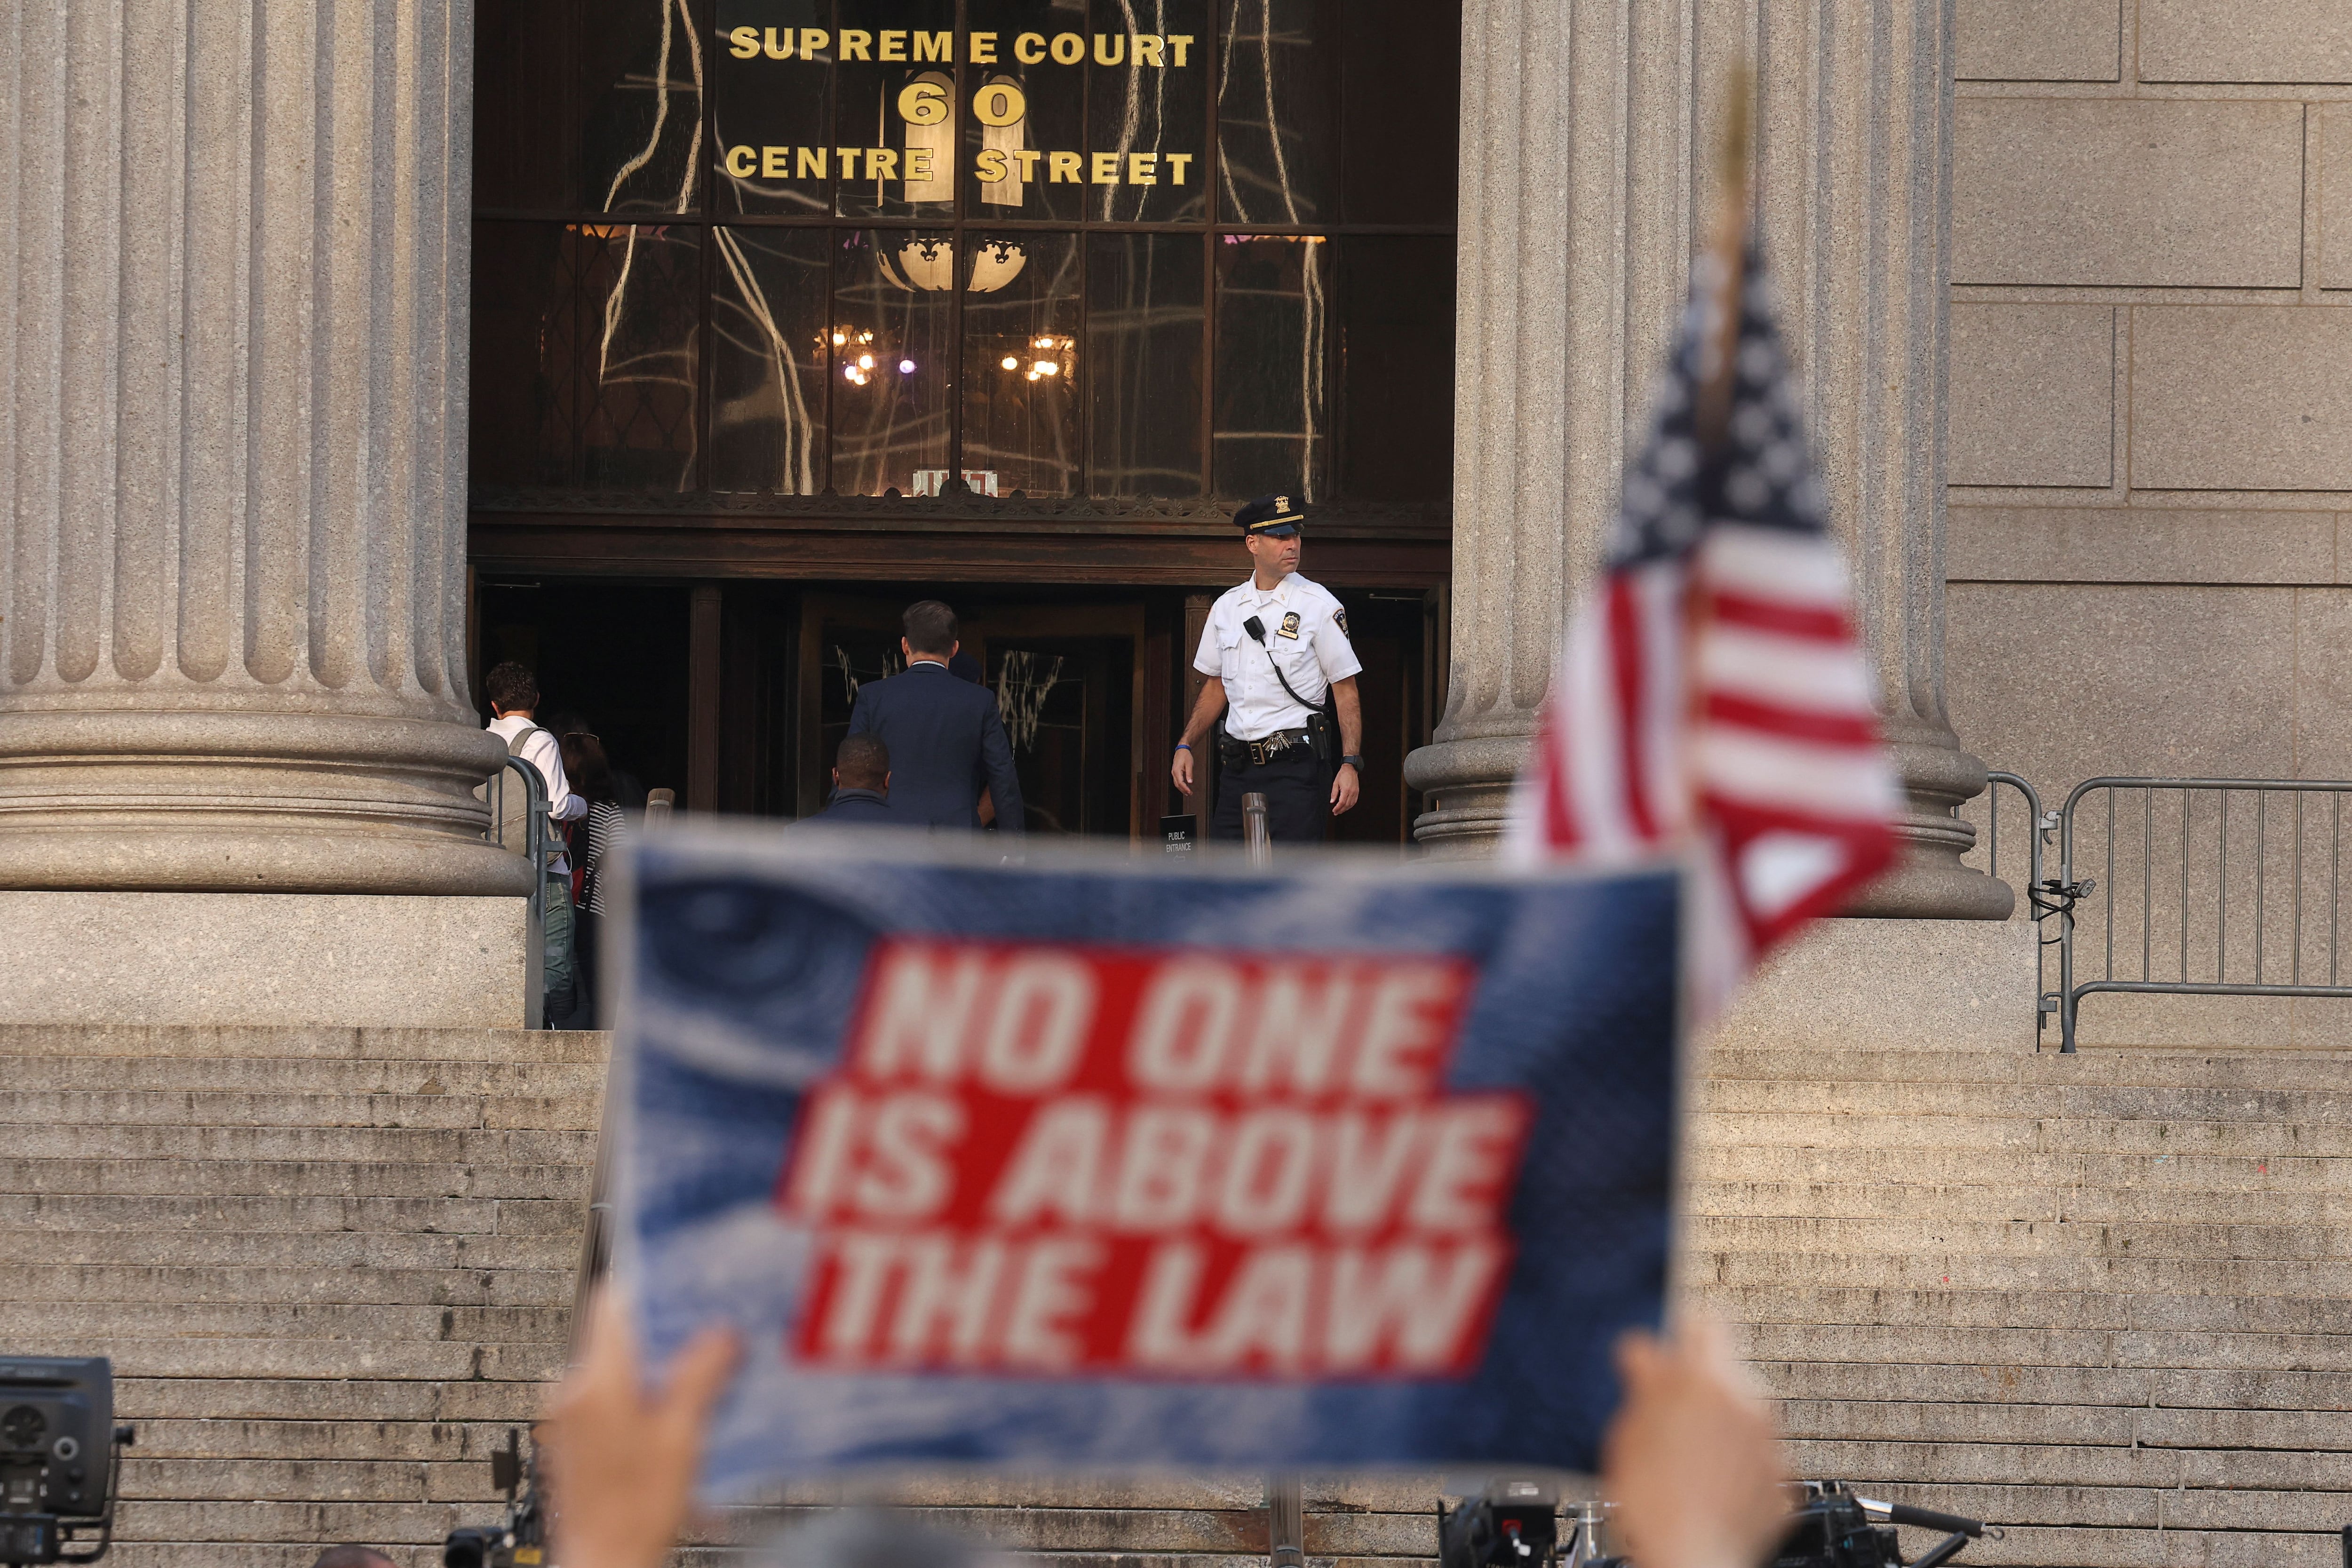 "Nadie está por encima de la ley", indica un cartel de un manifestante afuera del juzgado (Reuters)